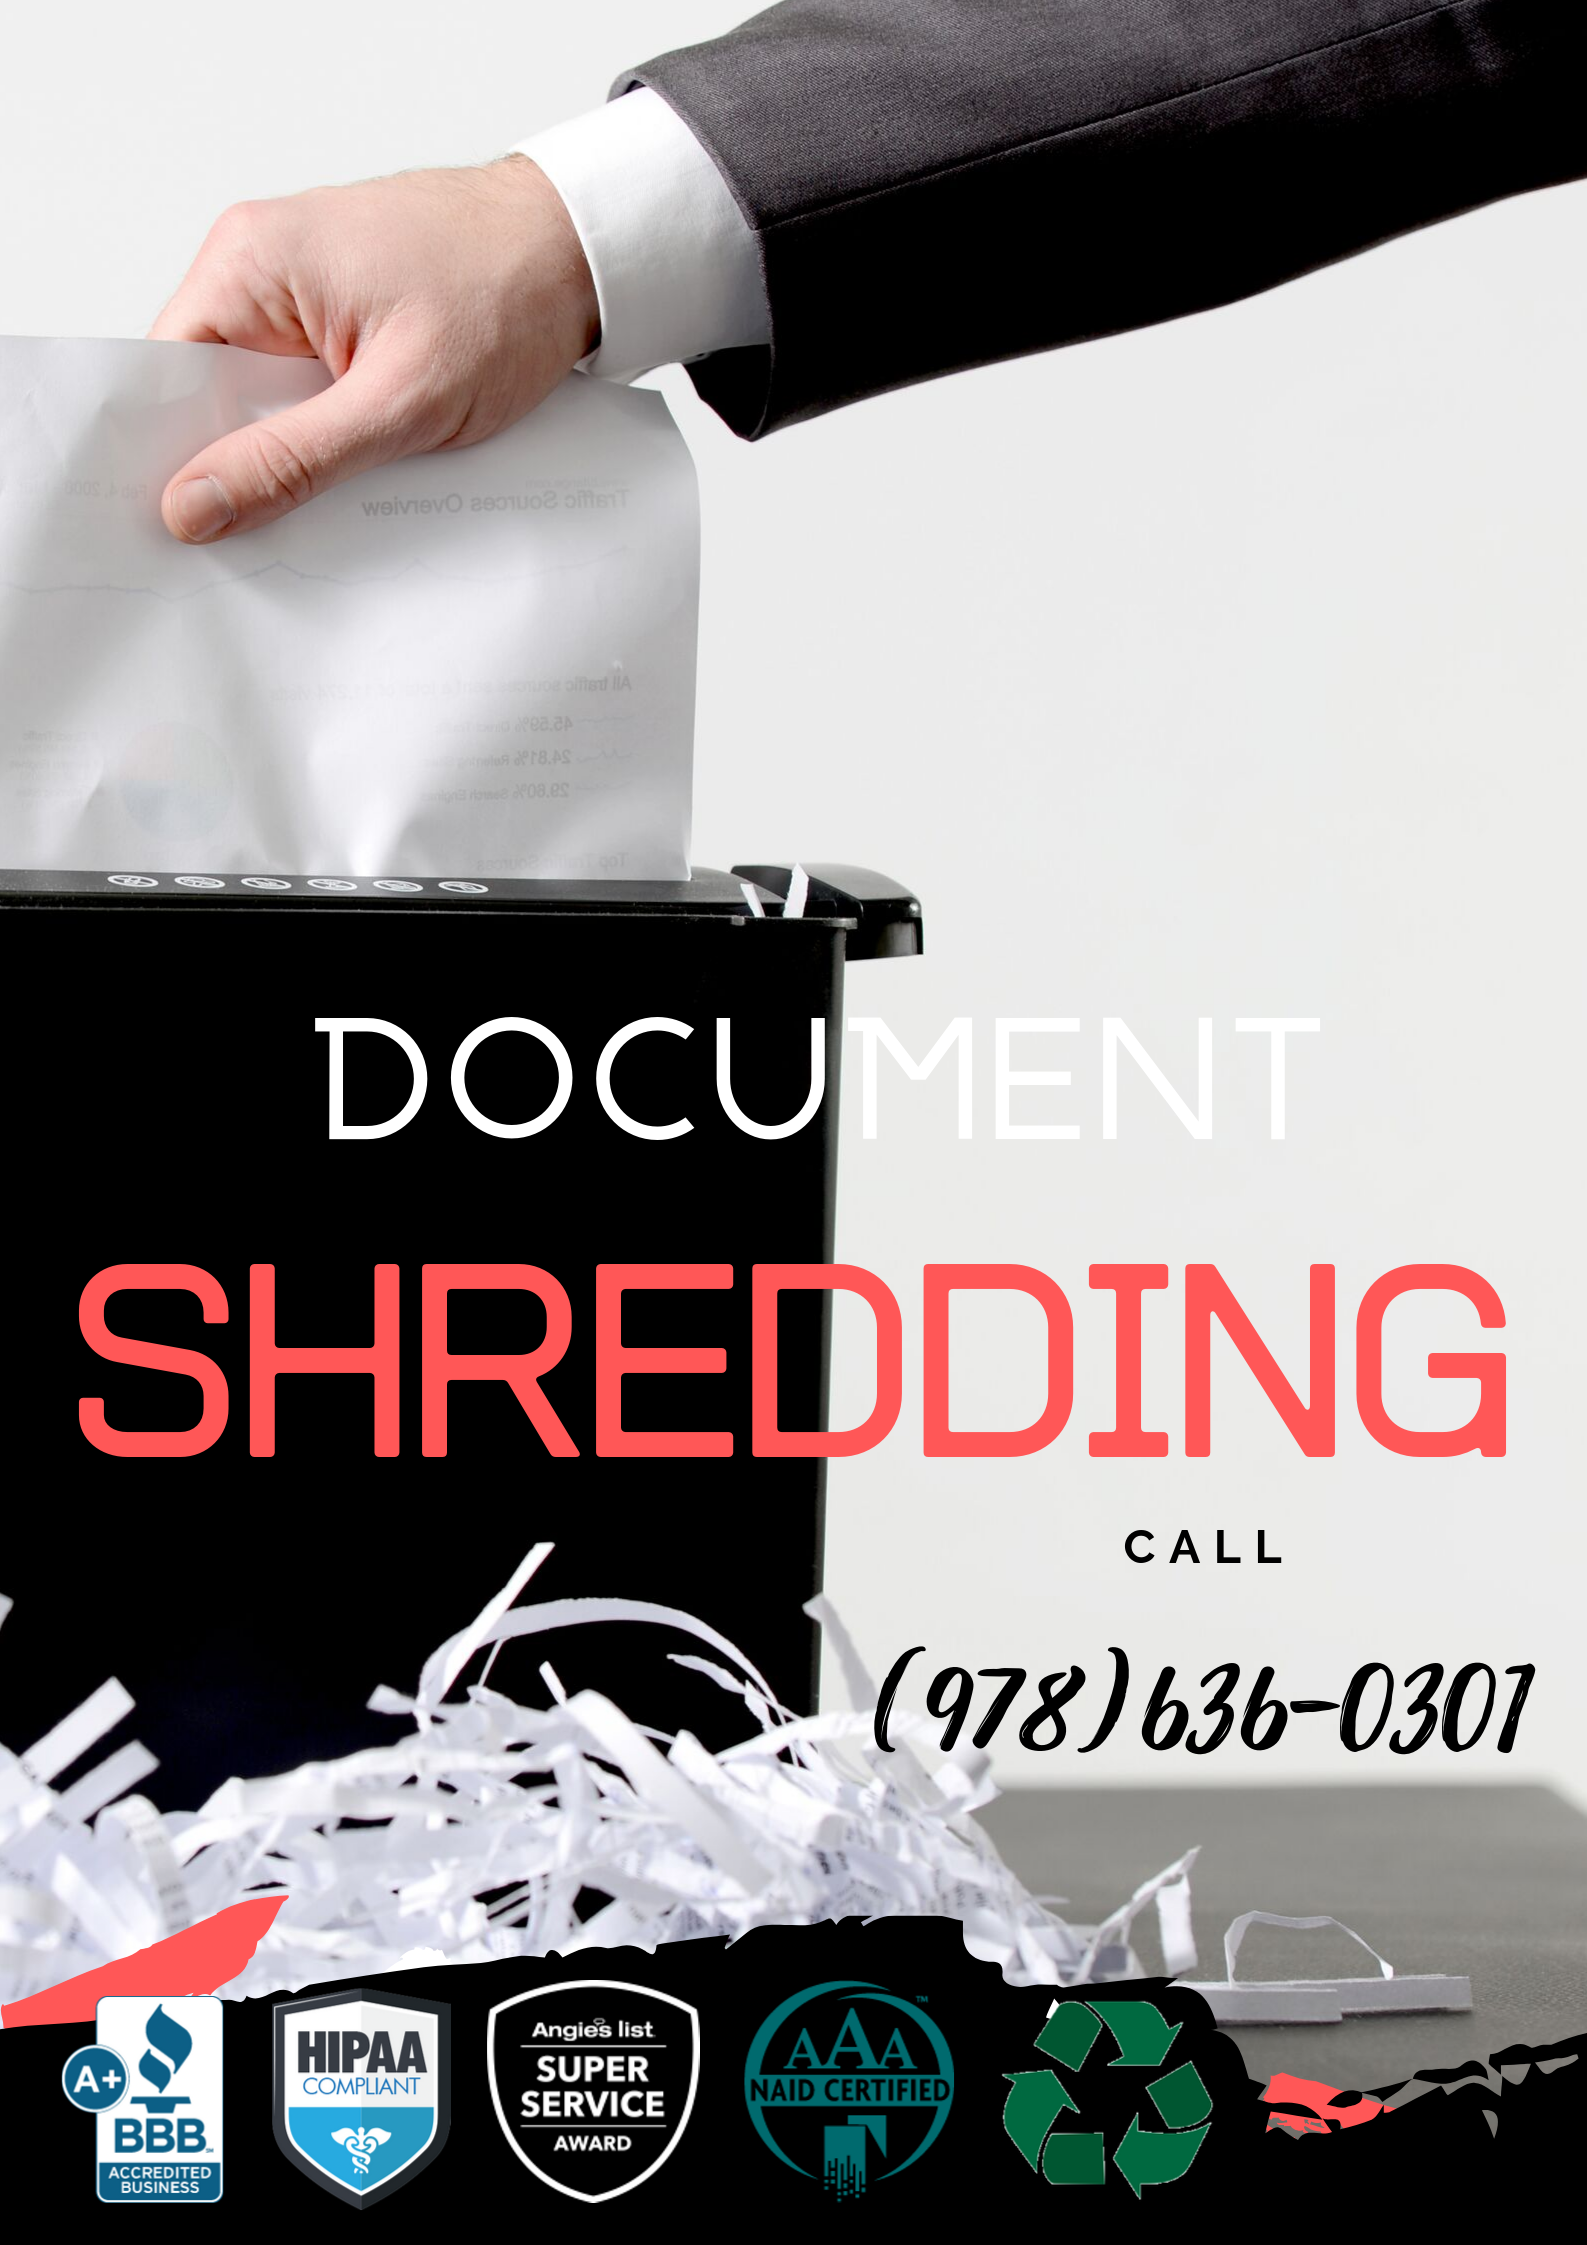 Best Document Shredding Service Near Me